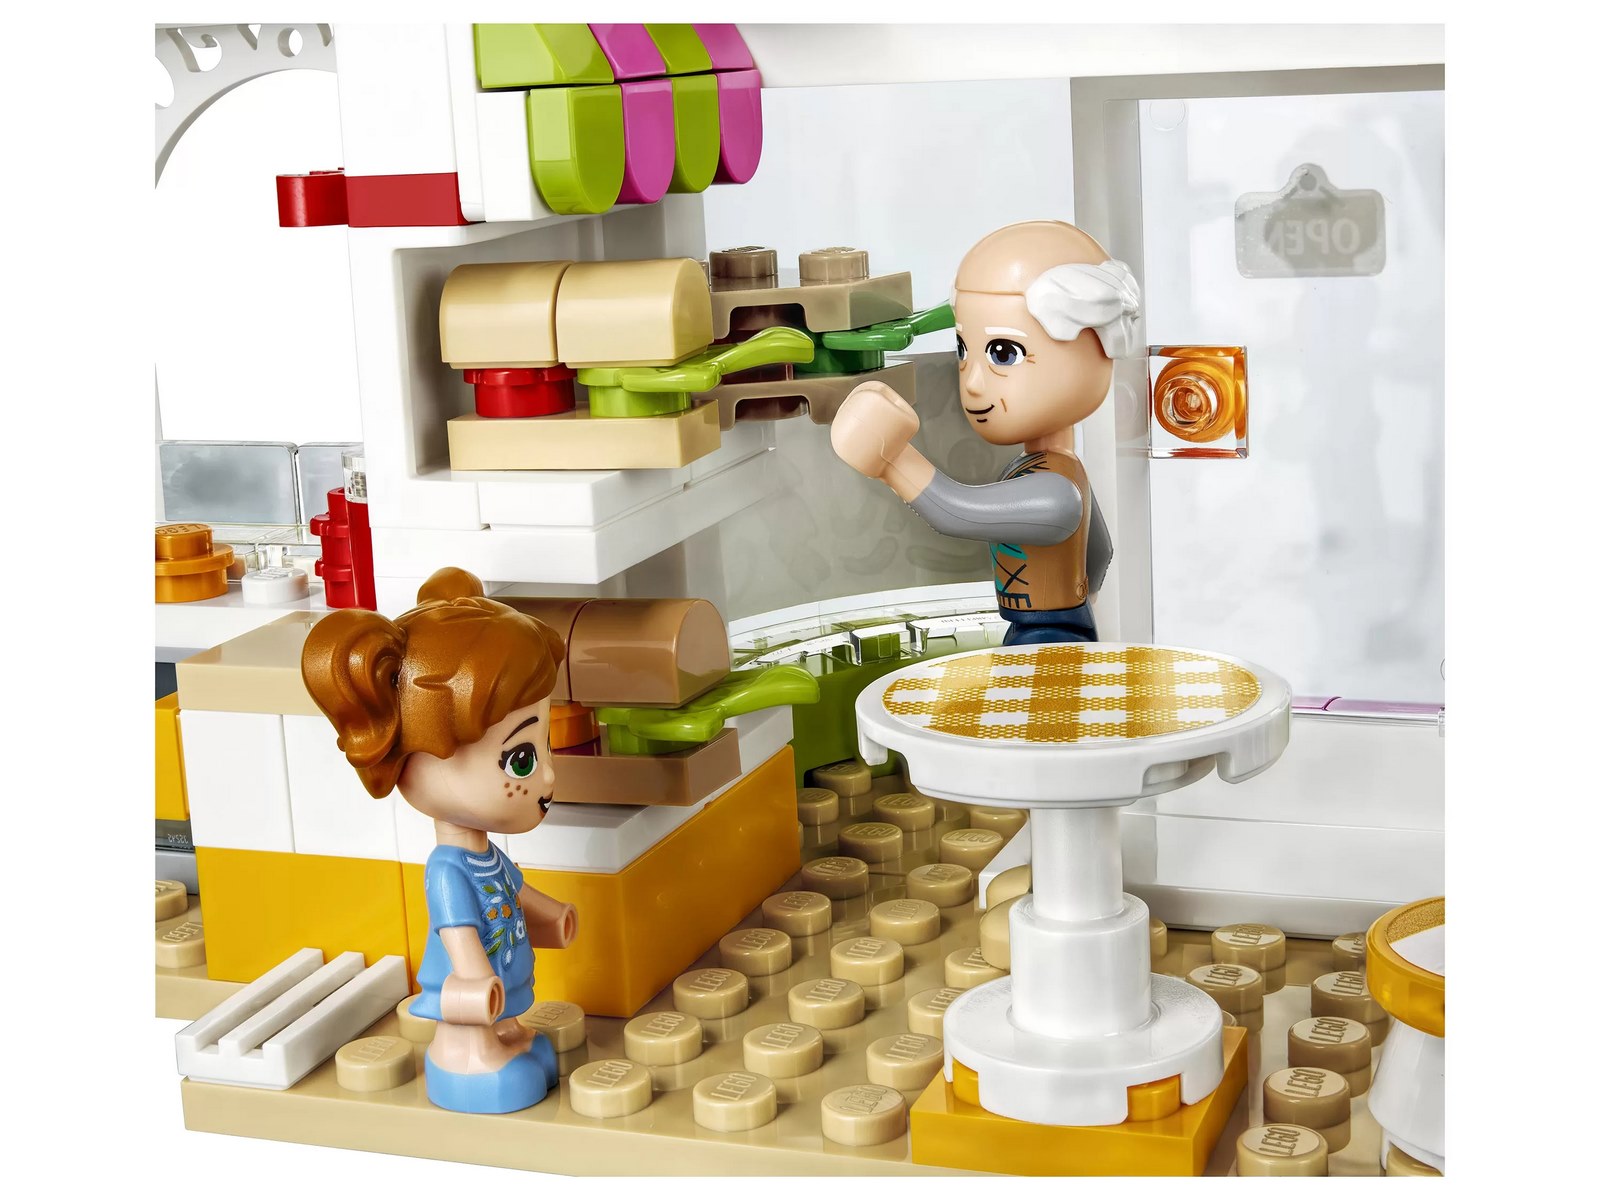 Конструктор LEGO Friends «Органическое кафе Хартлейк-Сити» 41444 / 314 деталей